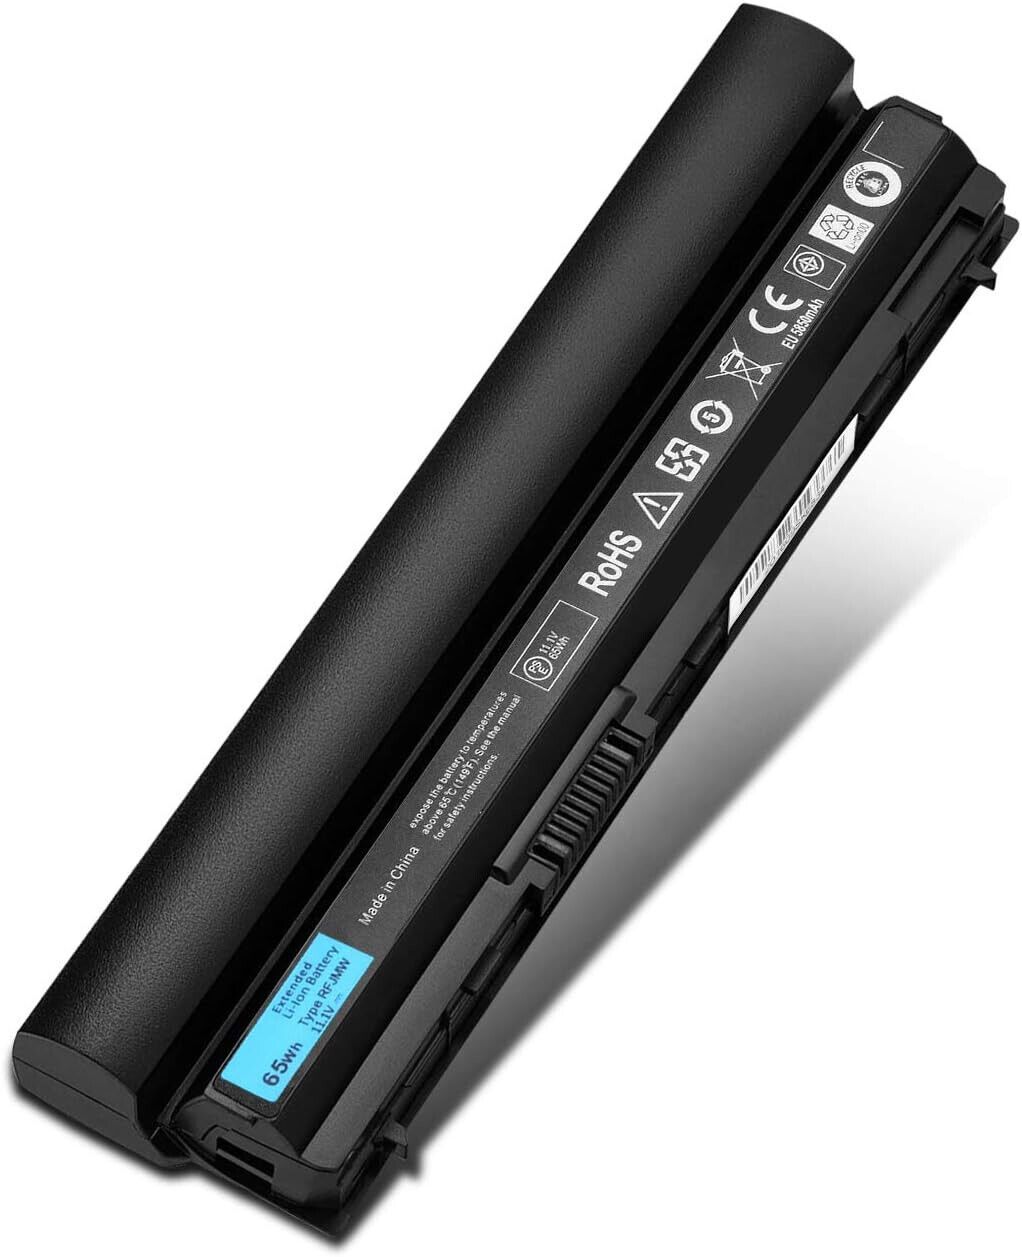 Laptop Battery for Dell Latitude E6320 E6330 E6220 E6230 FRR0G UJ499 TPHRG KJ321